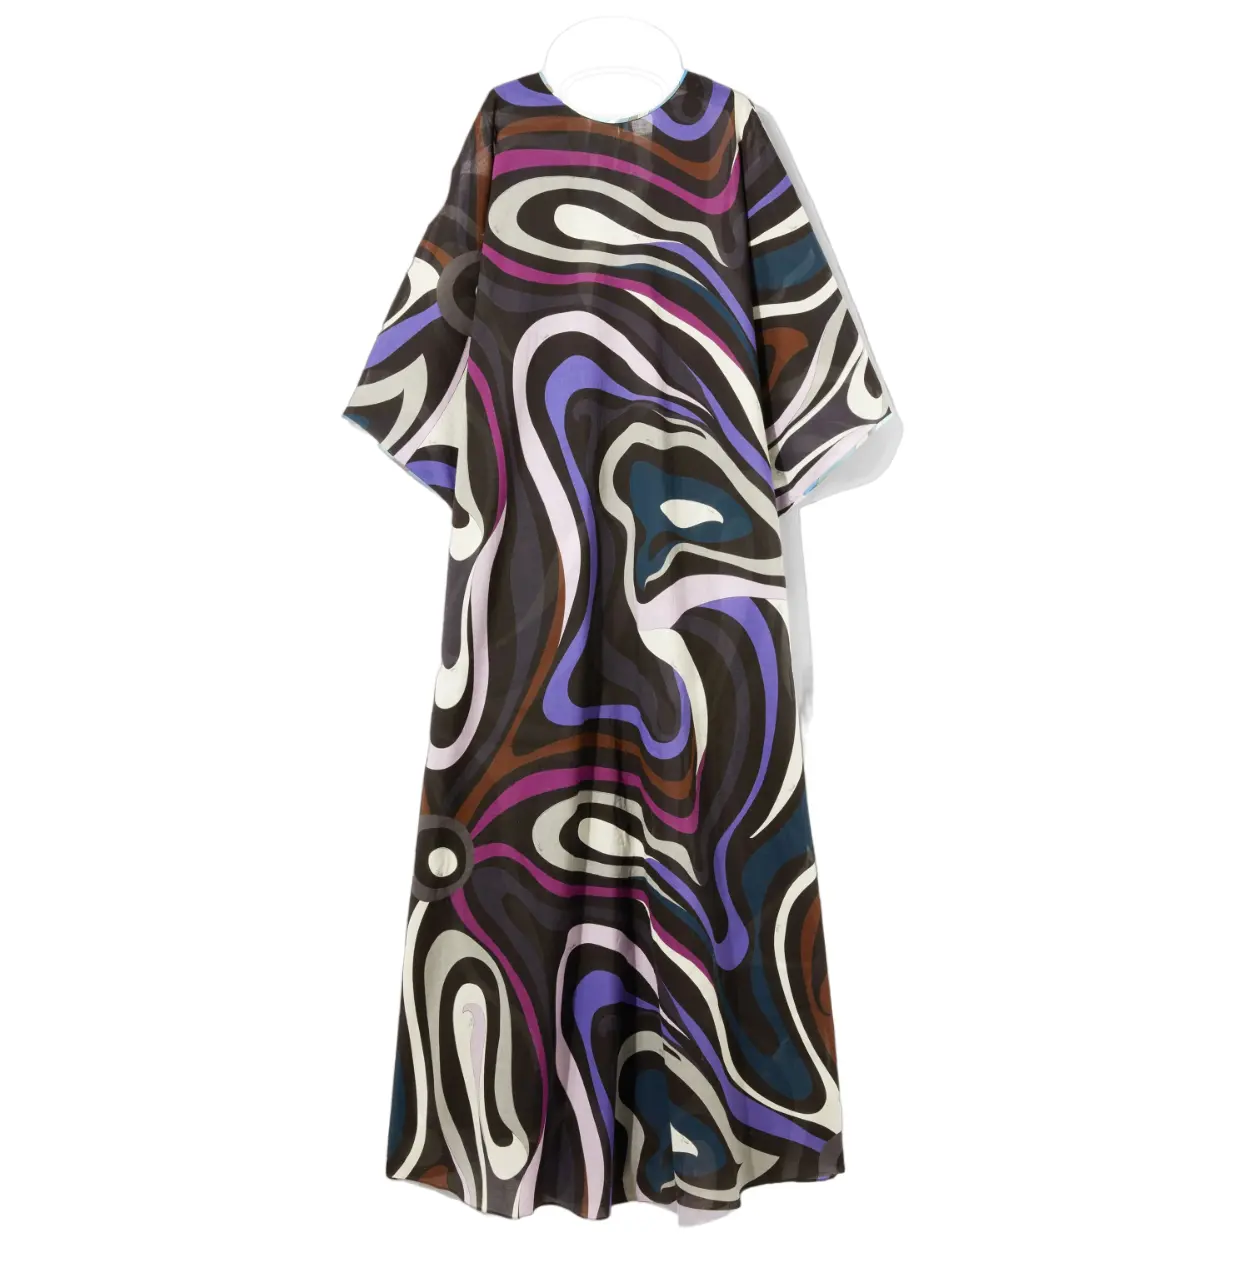 JSDC Premium Baumwolle gedruckt lange Frauen Strand Kaftan Kleid Design Neuheiten Sommer lässig schönes Kleid für Frauen